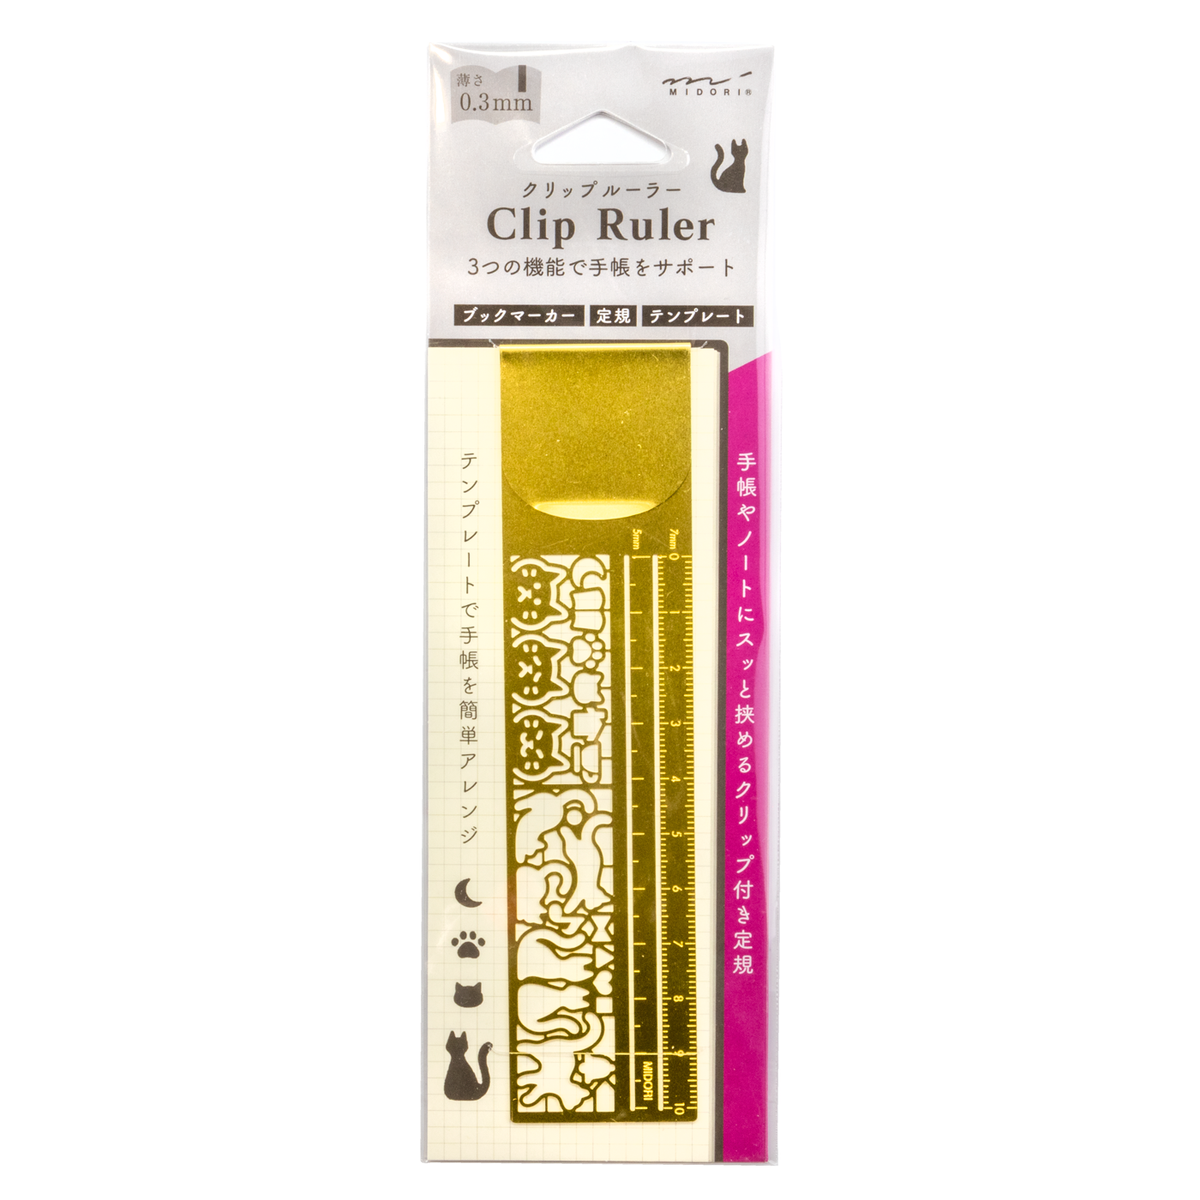 Midori Clip Ruler - Decorative Pattern